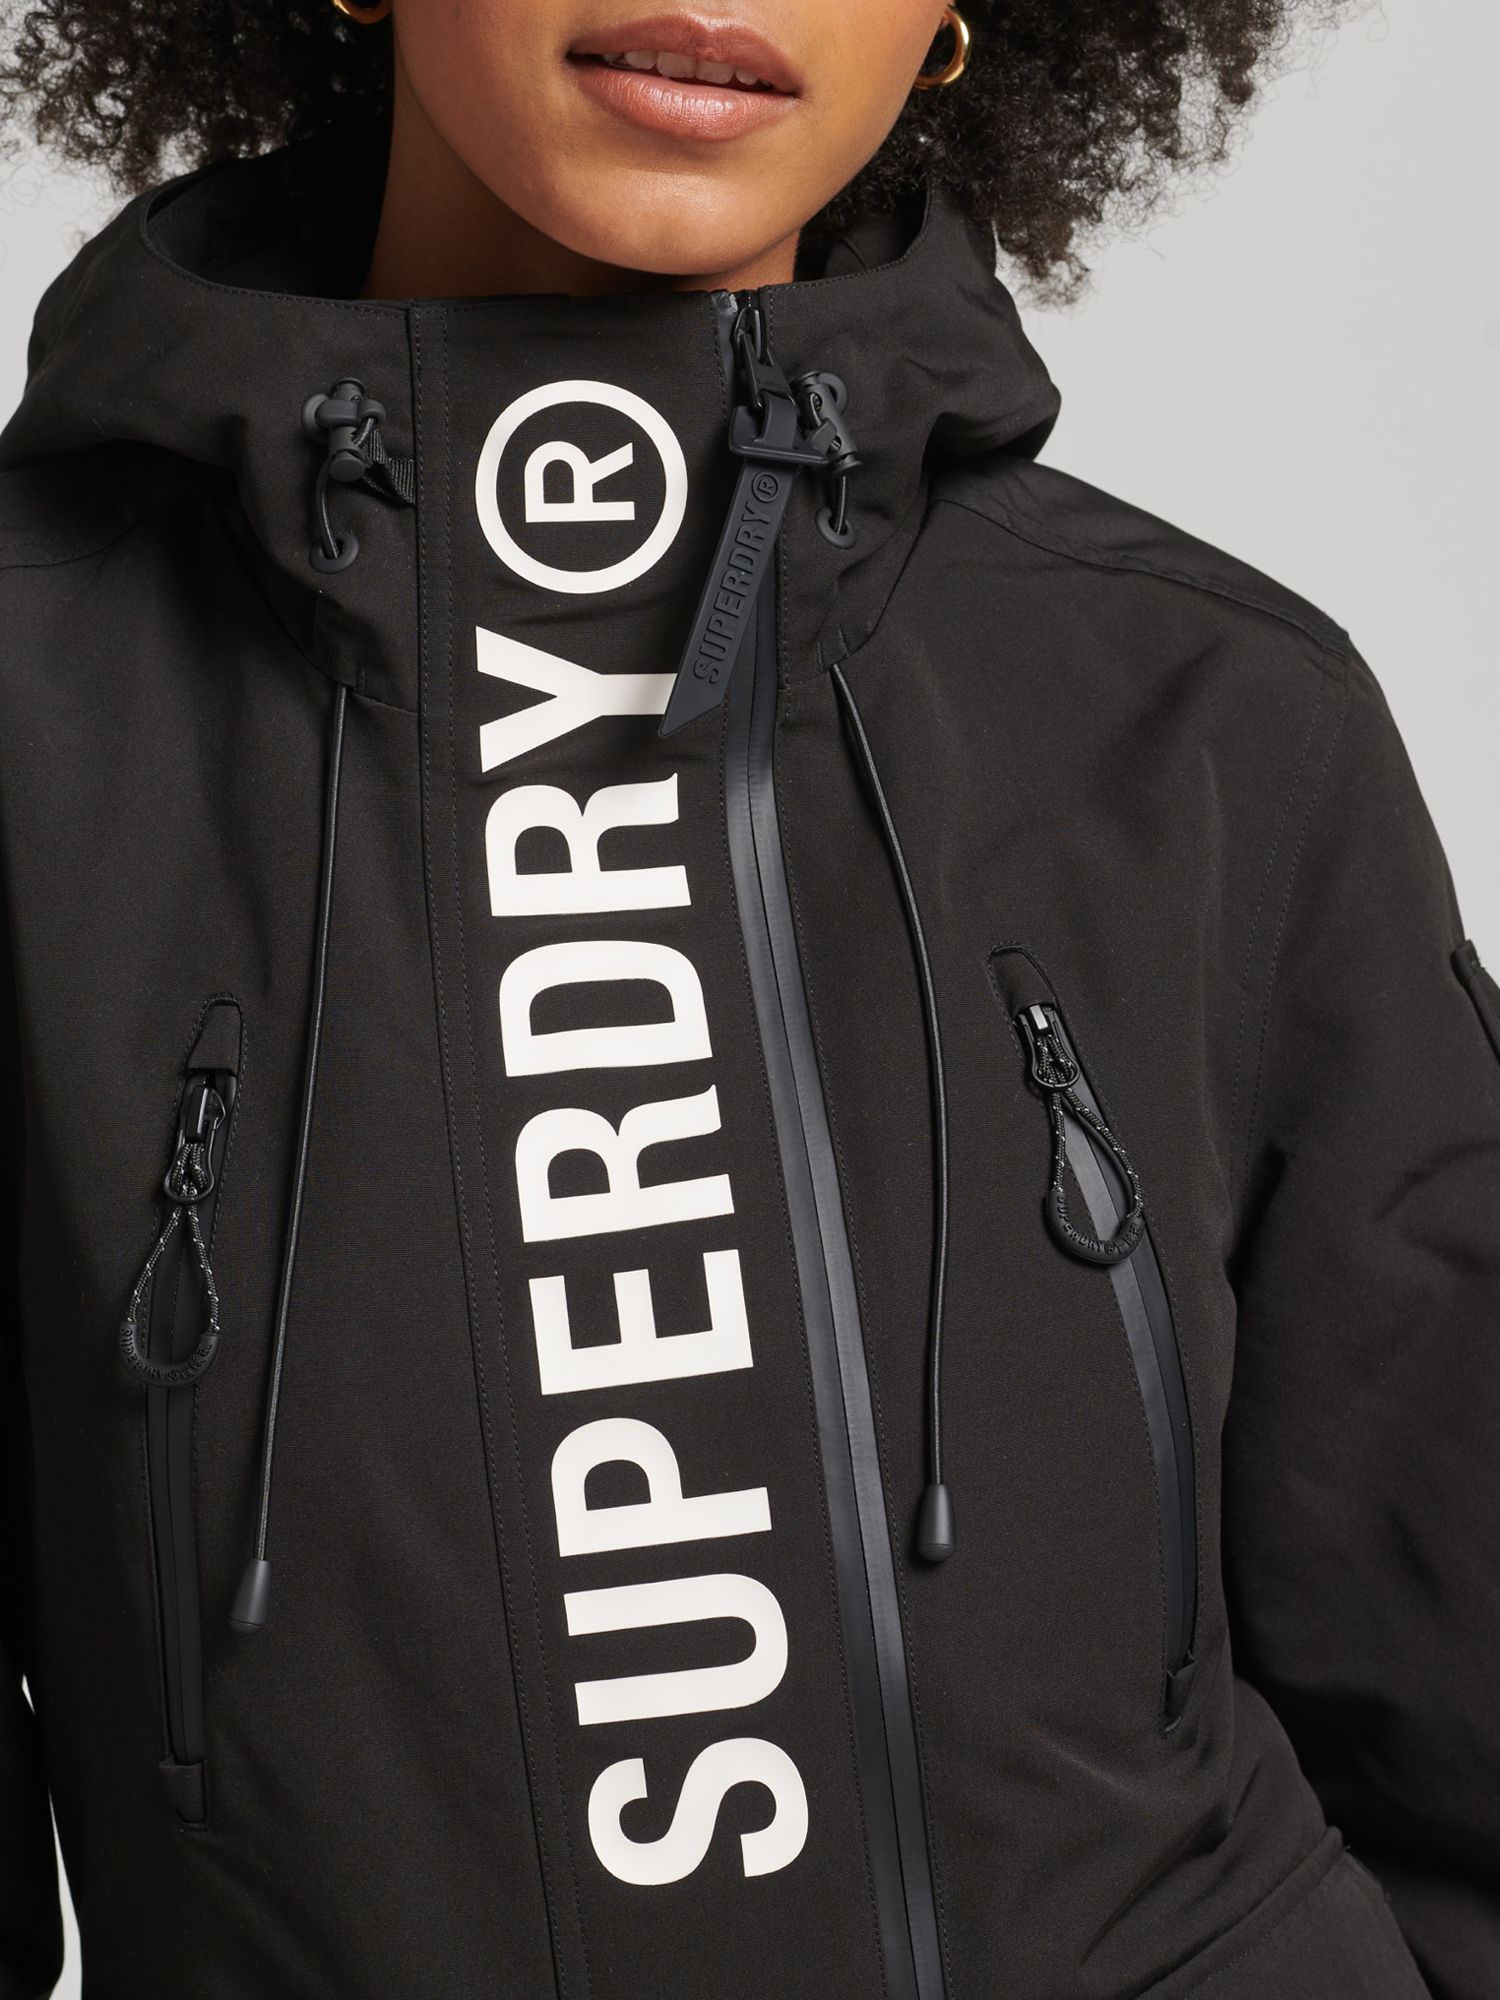 Buy Superdry Hooded Ultimate SD-Windbreaker Jacket Online at johnlewis.com